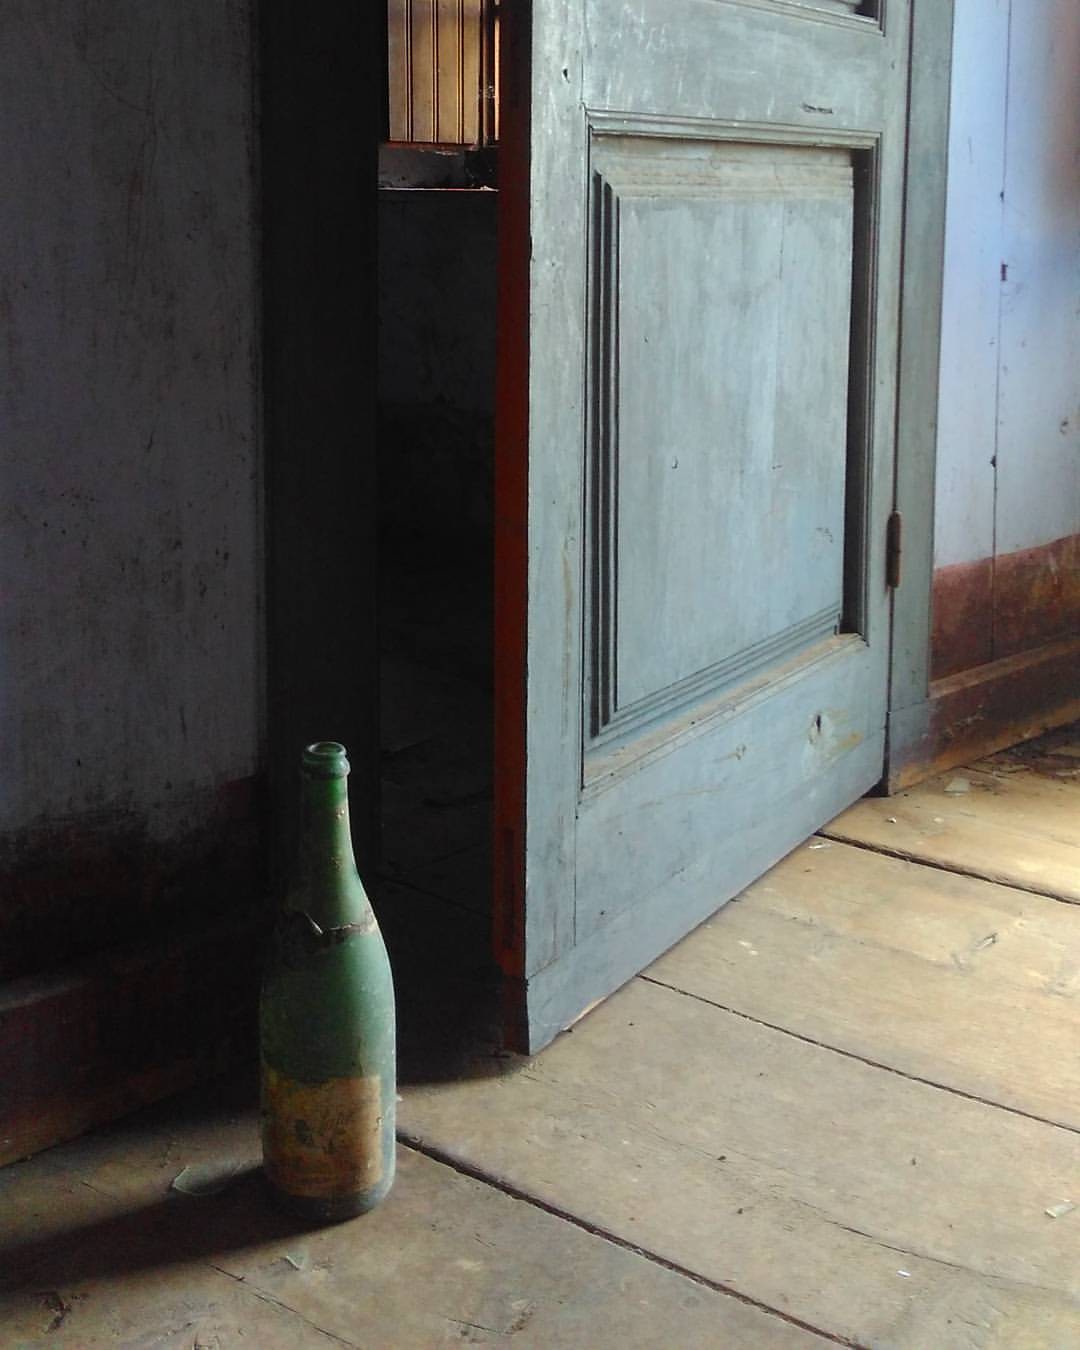 Бутылка в заброшенном доме. Автор Shimizuspulse